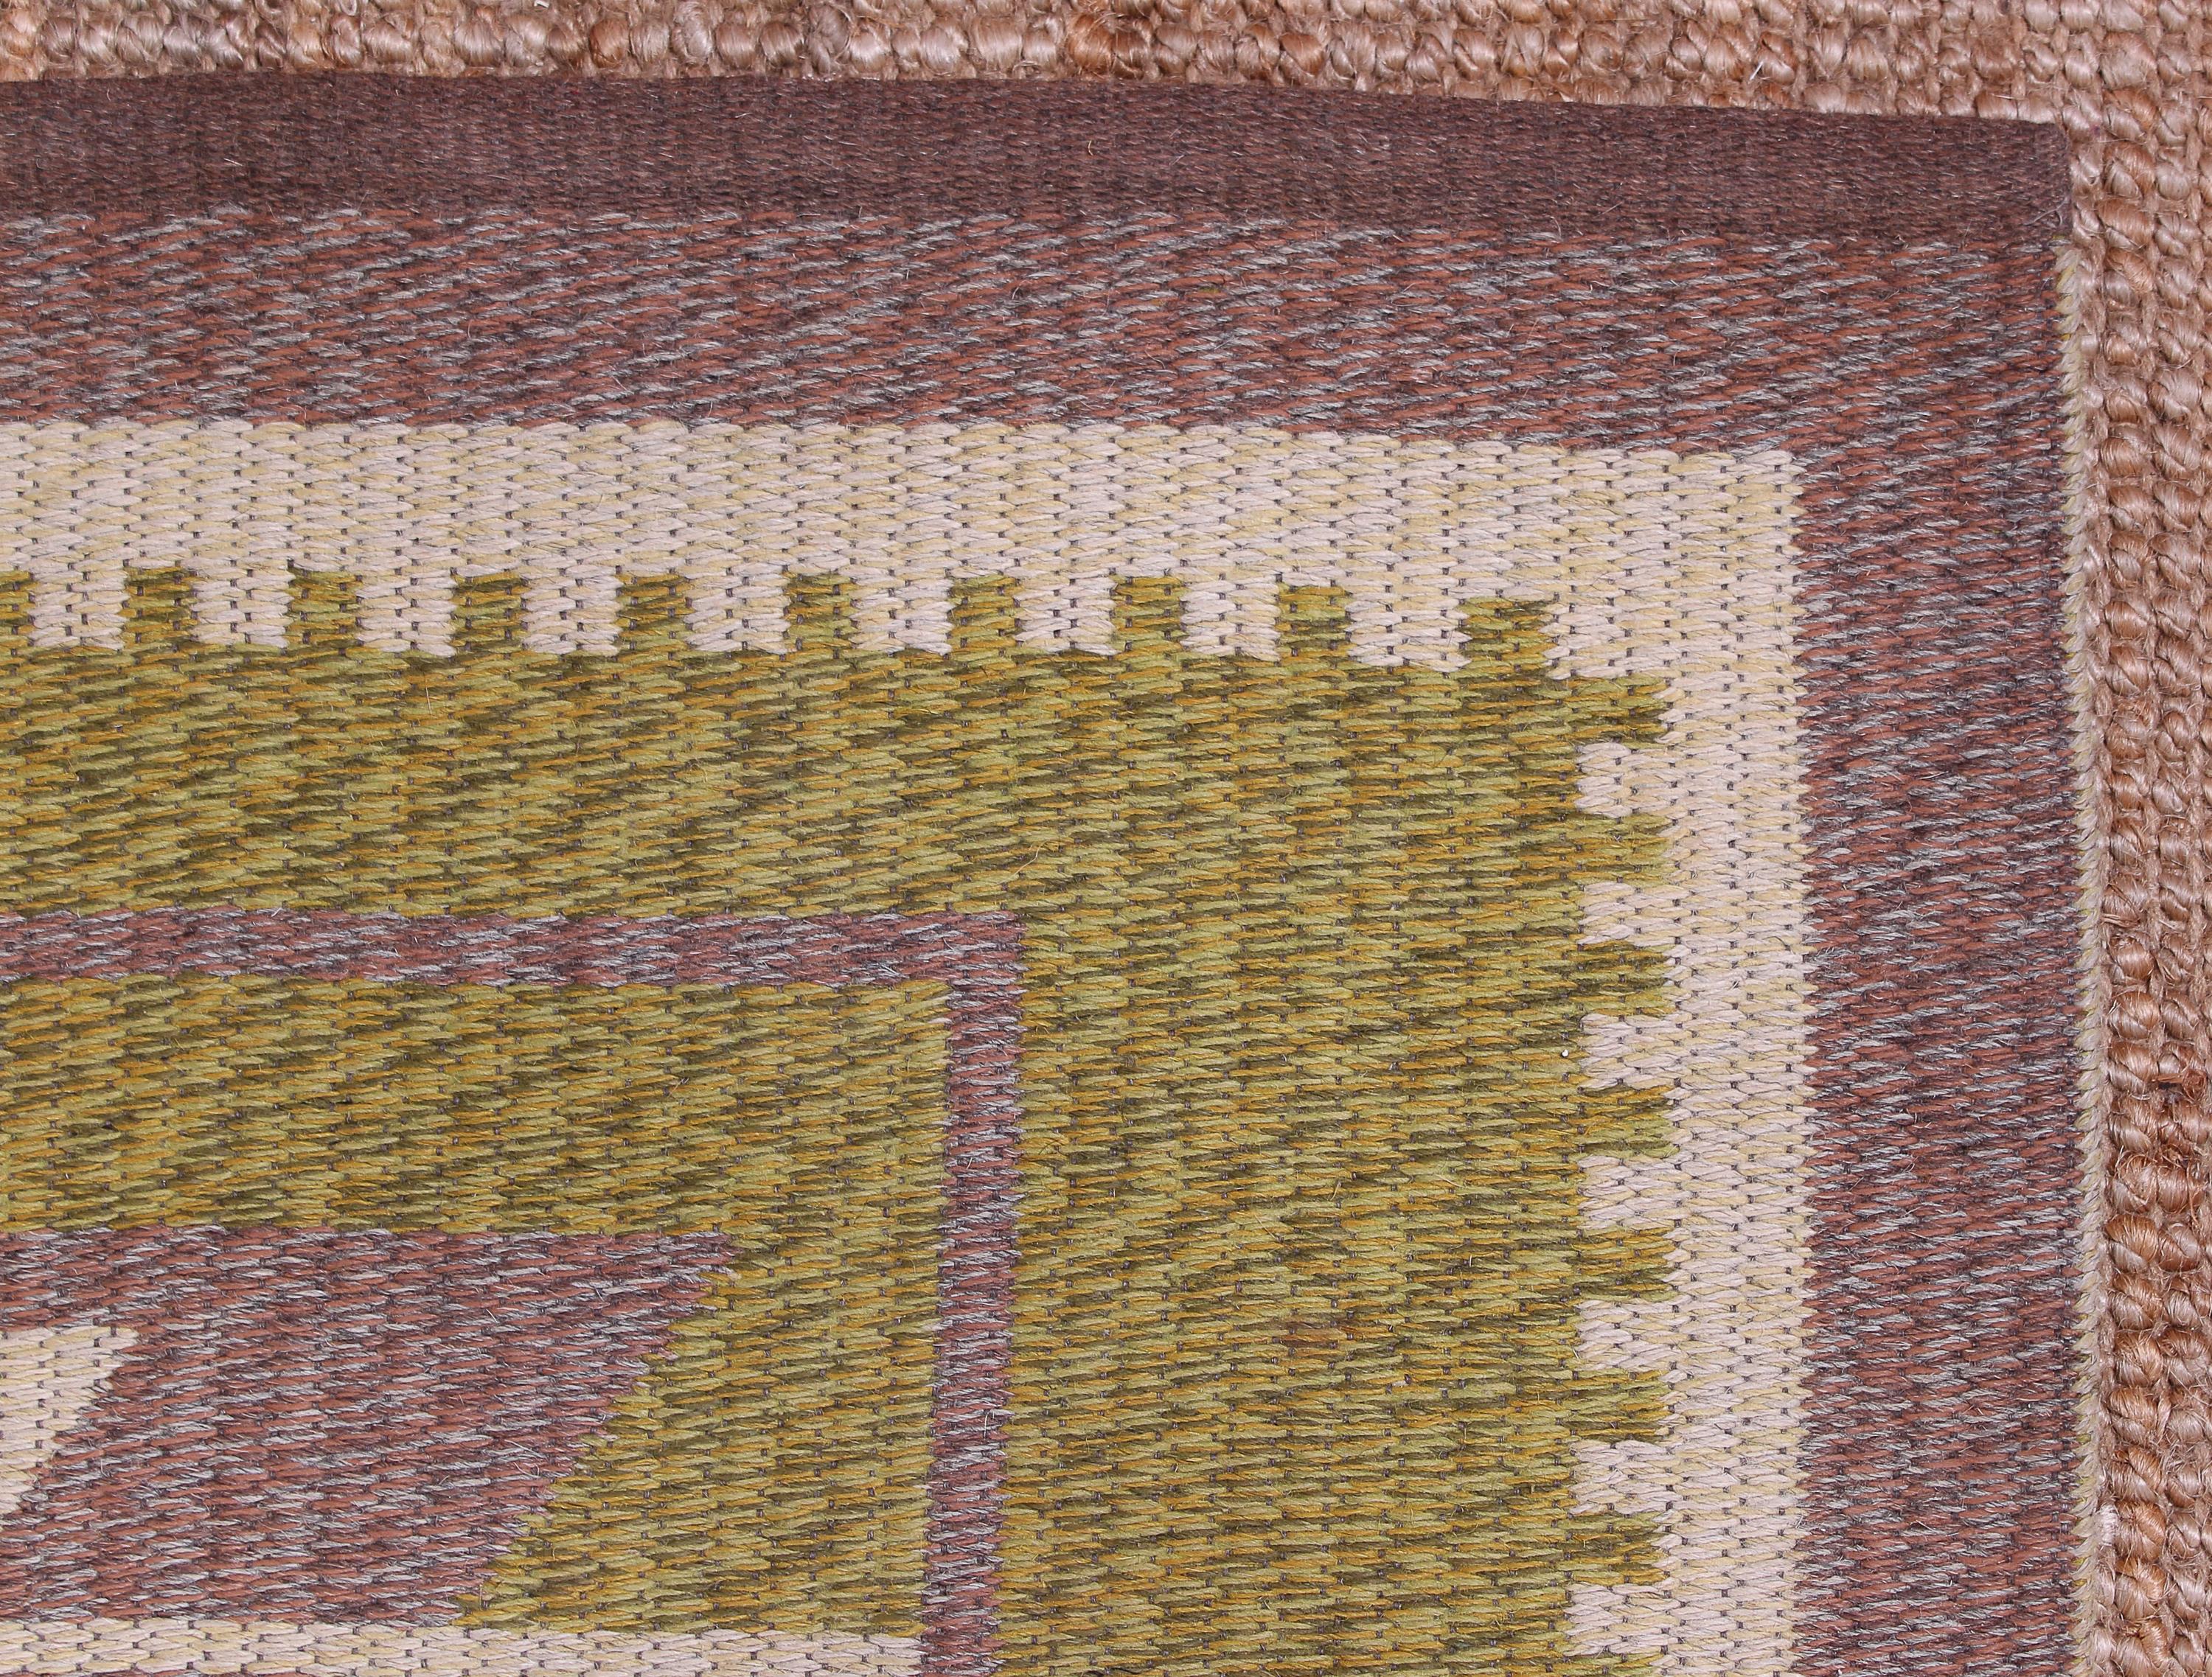 Midcentury Swedish Flat Weave Carpet (Dubble Weave), 1950s For Sale 1